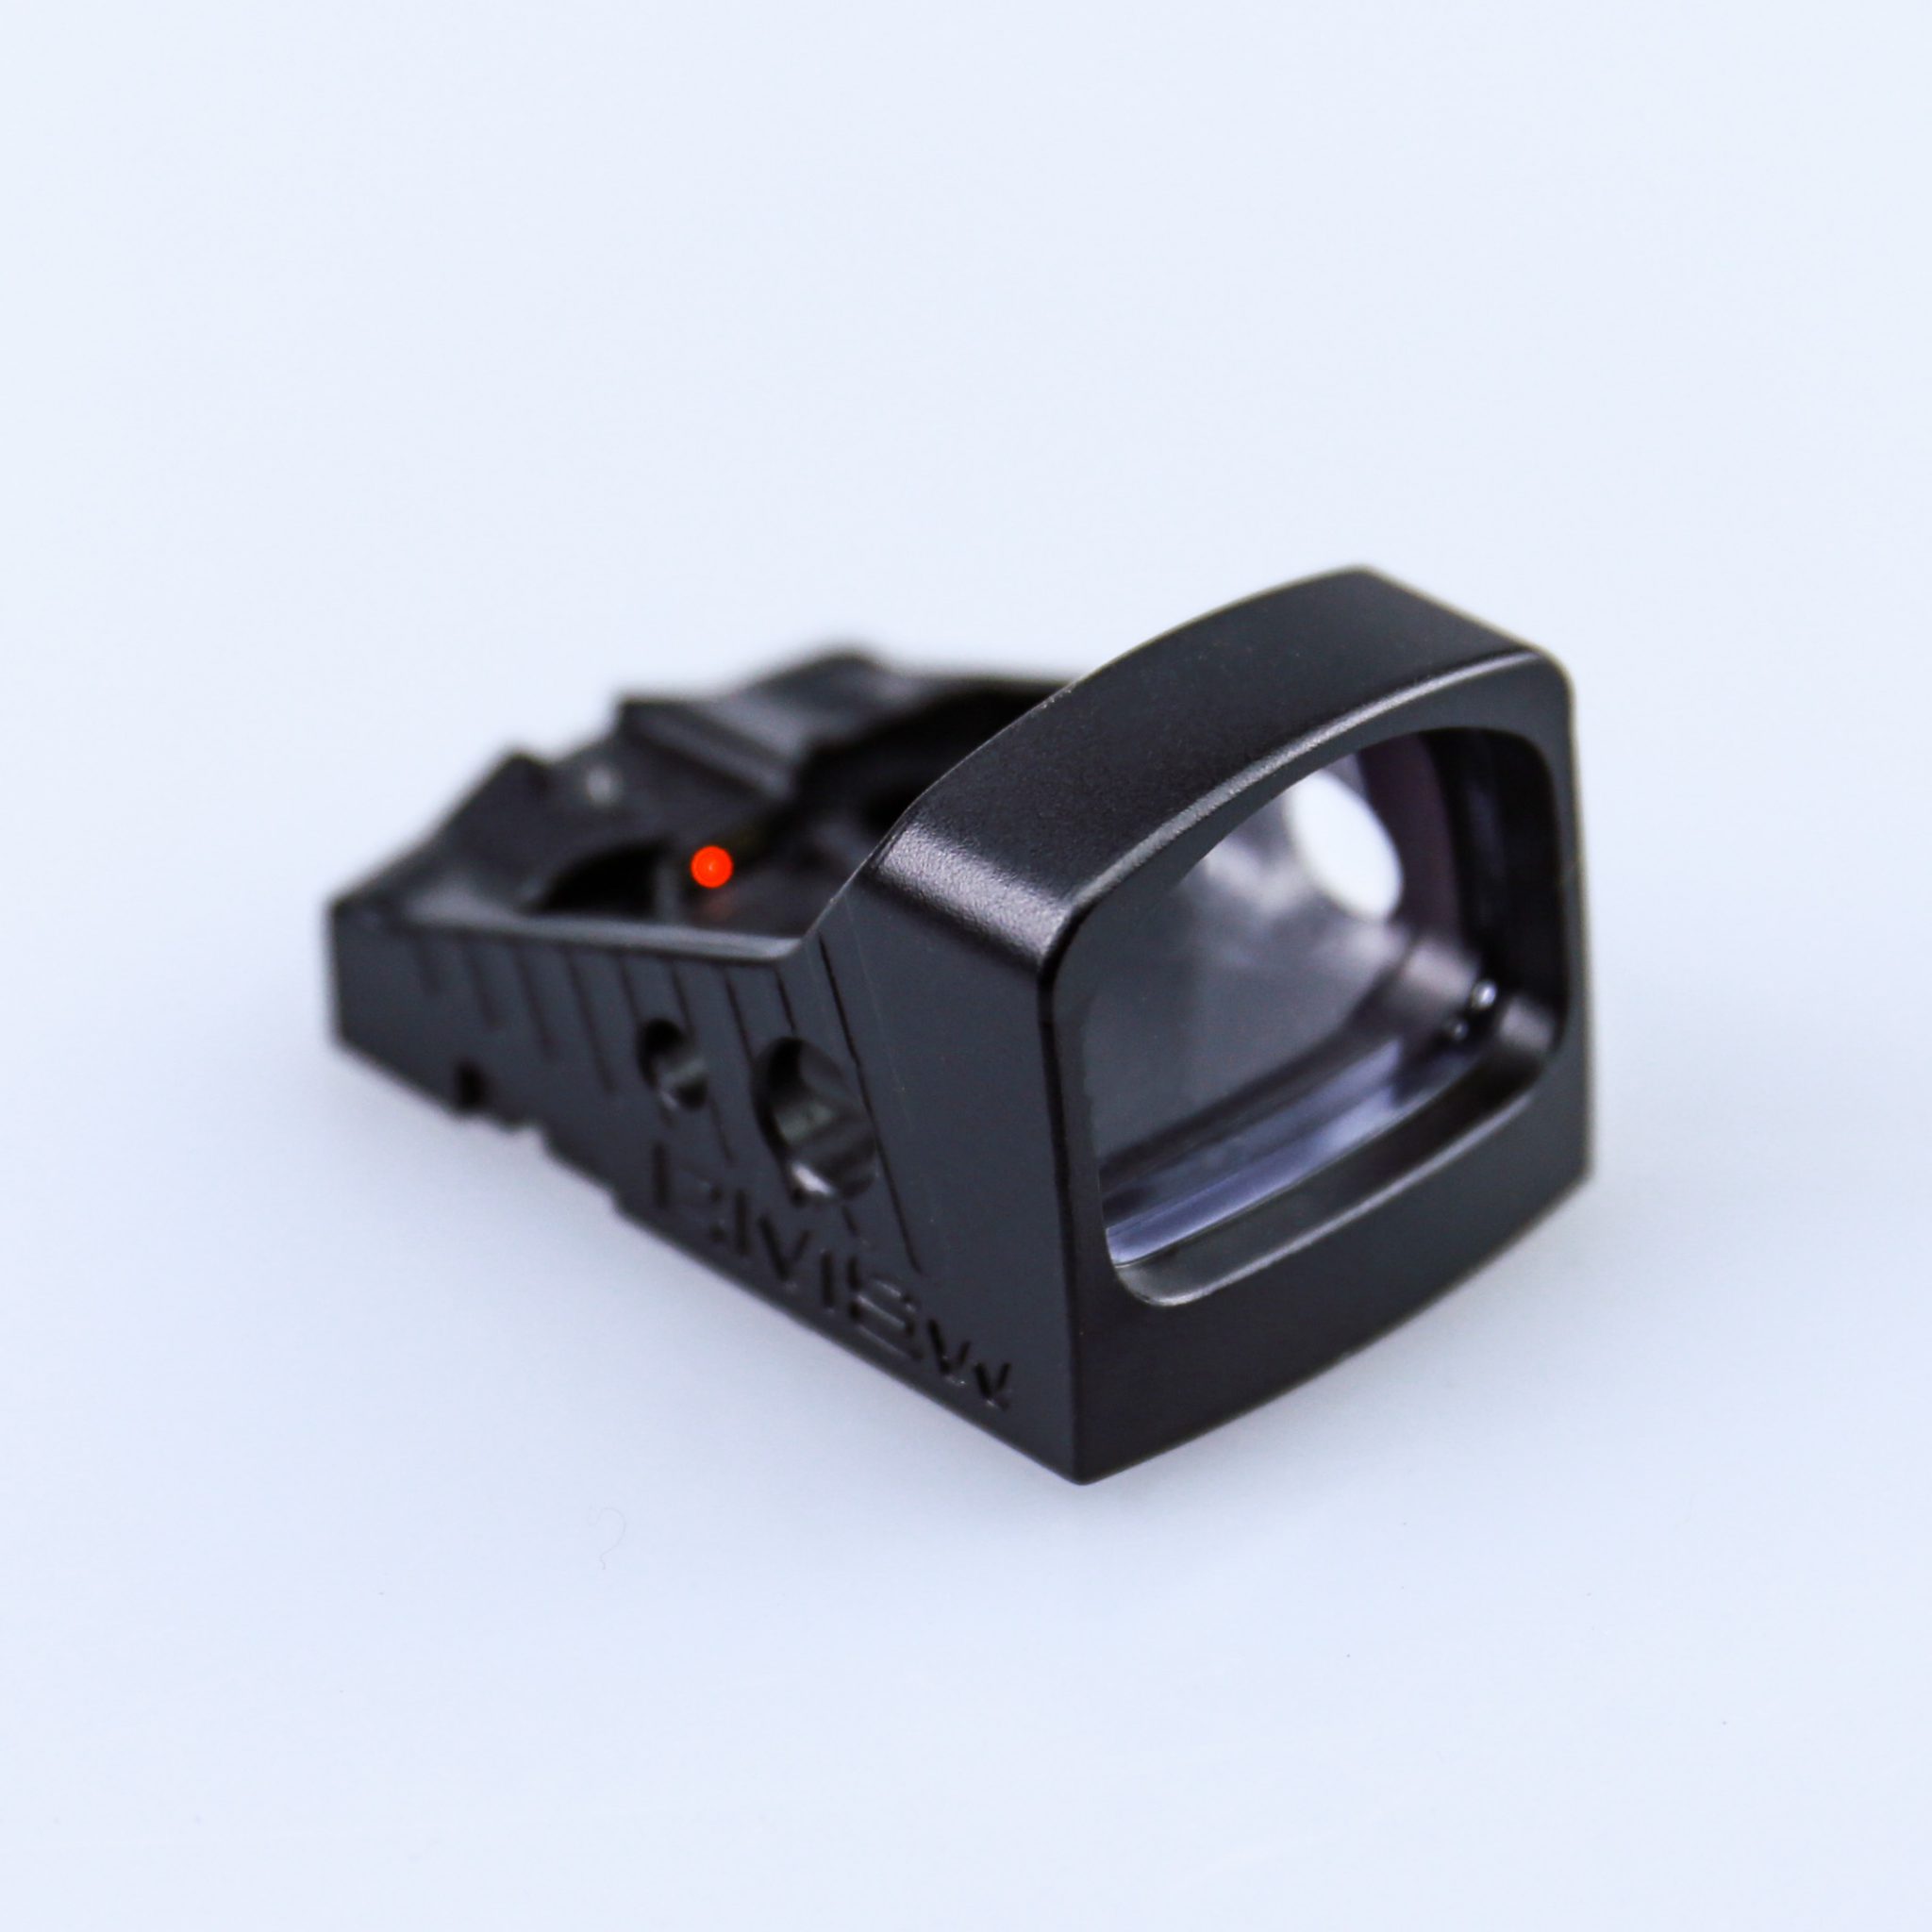 Shield RMS Mini Sight waterproof met polymeer lens